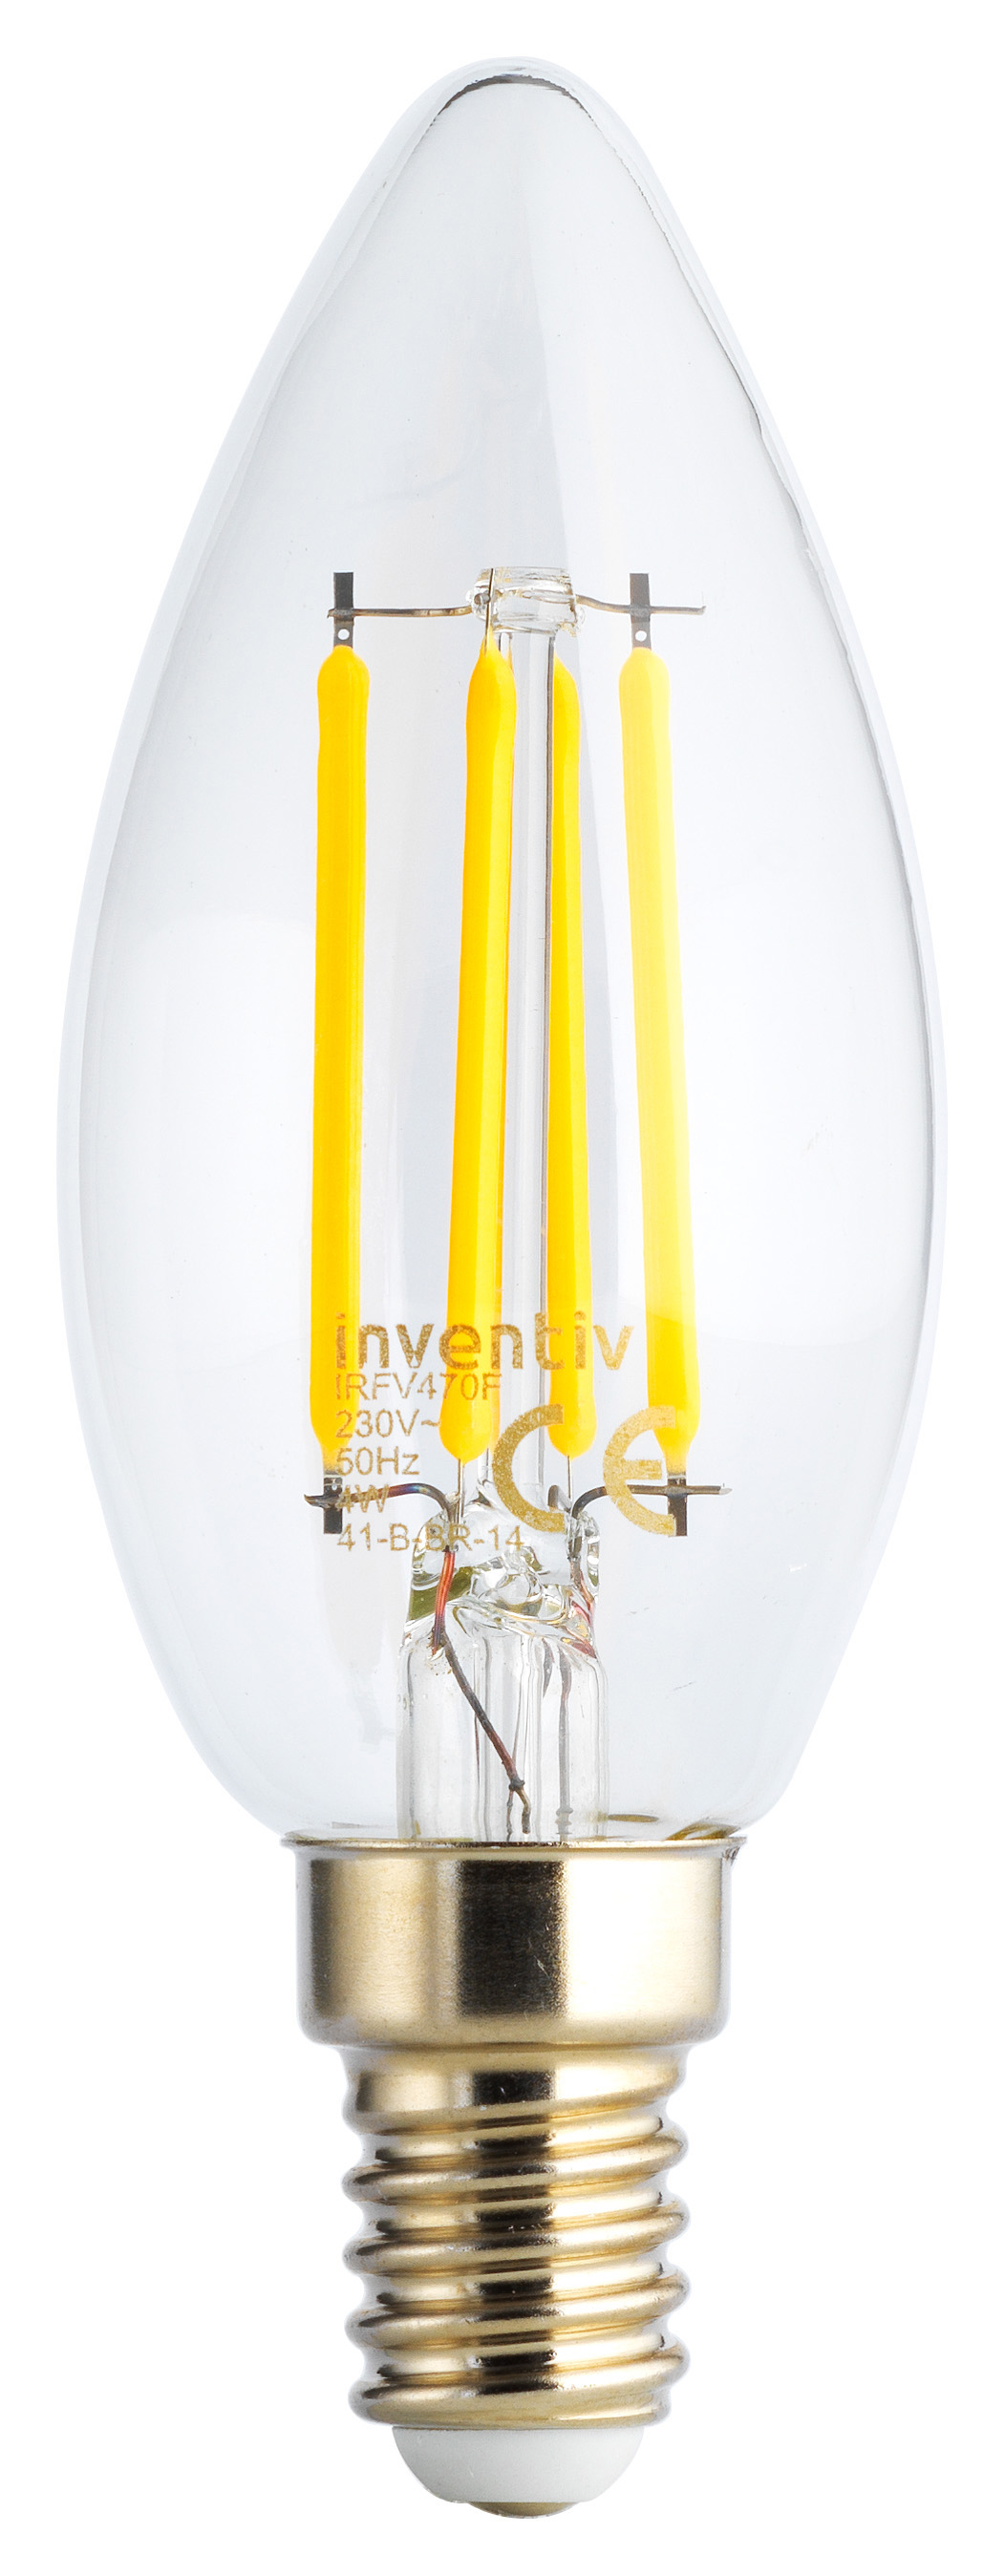 Ampoule Retroled flamme transparent E14 5W blanc chaud - INVENTIV